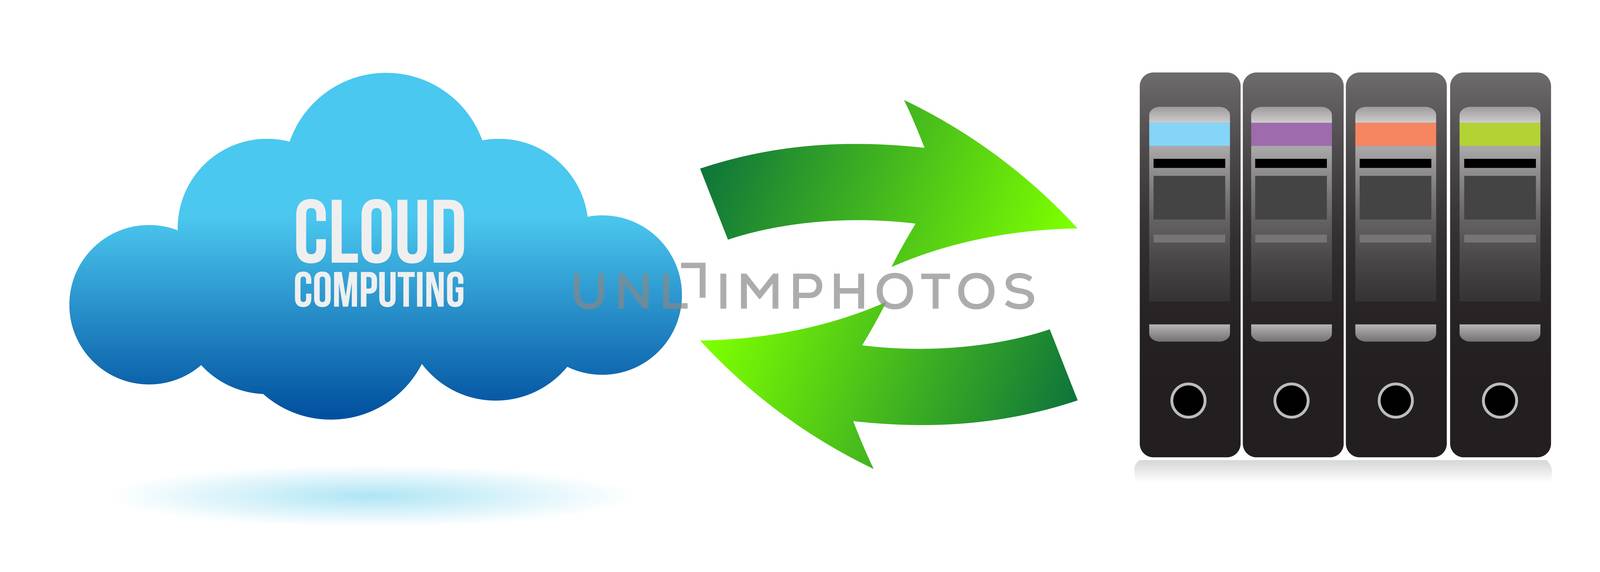 cloud server file transfer concept illustration design